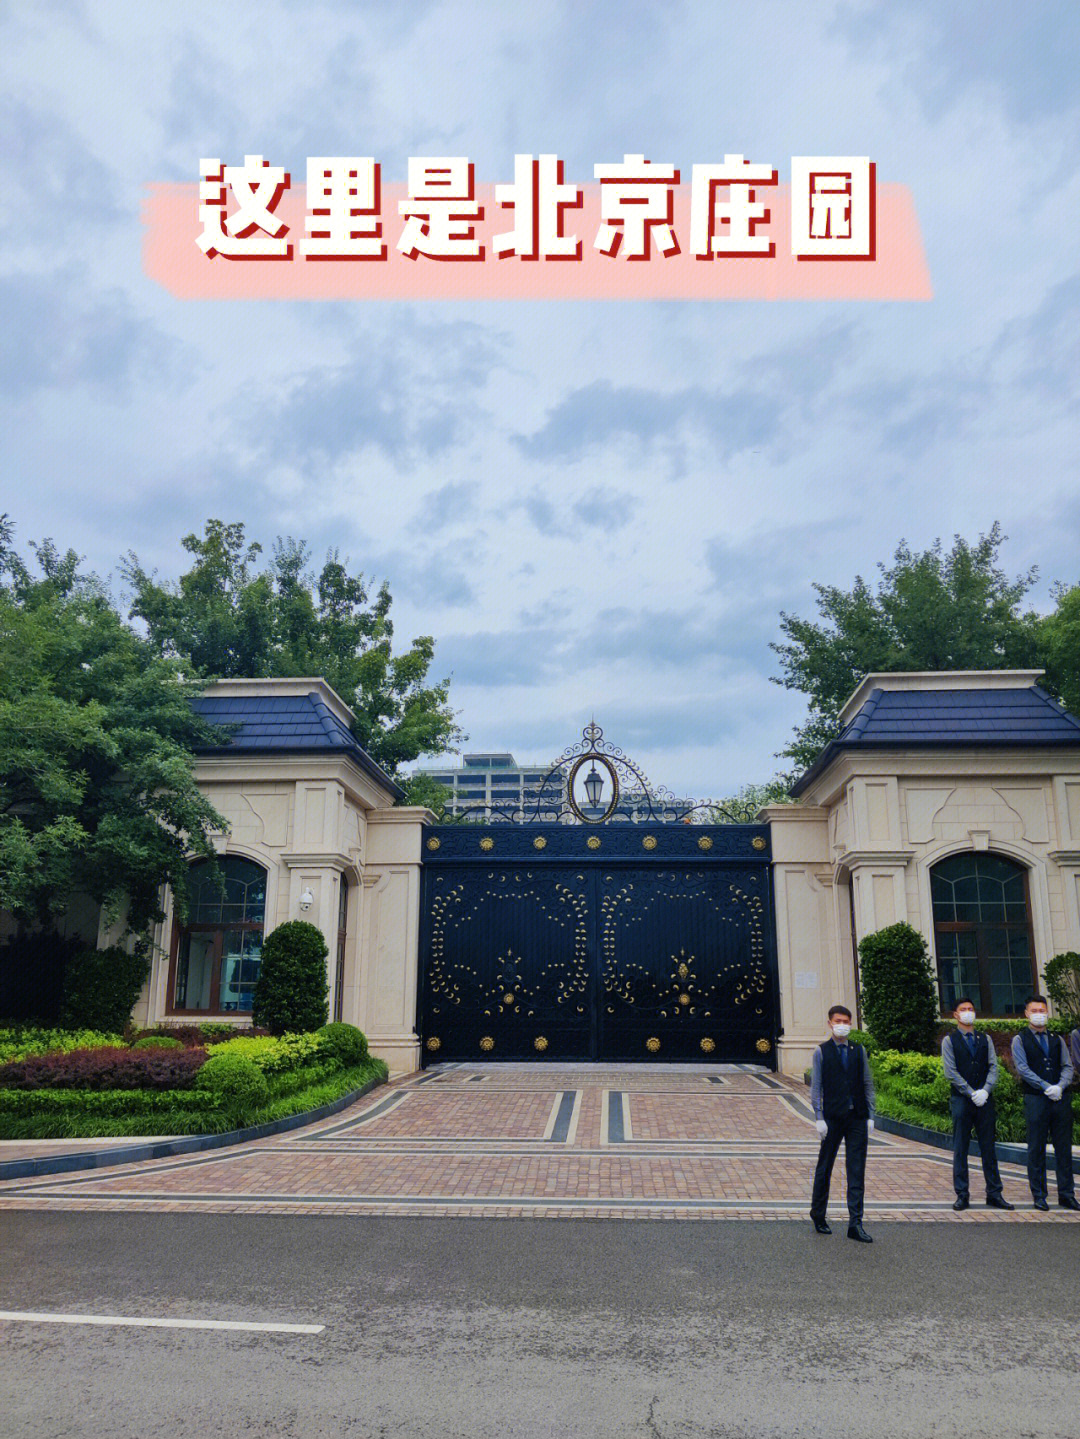 96北京2016年发布禁墅令后,独栋别墅很难再有新房项目,北京庄园是